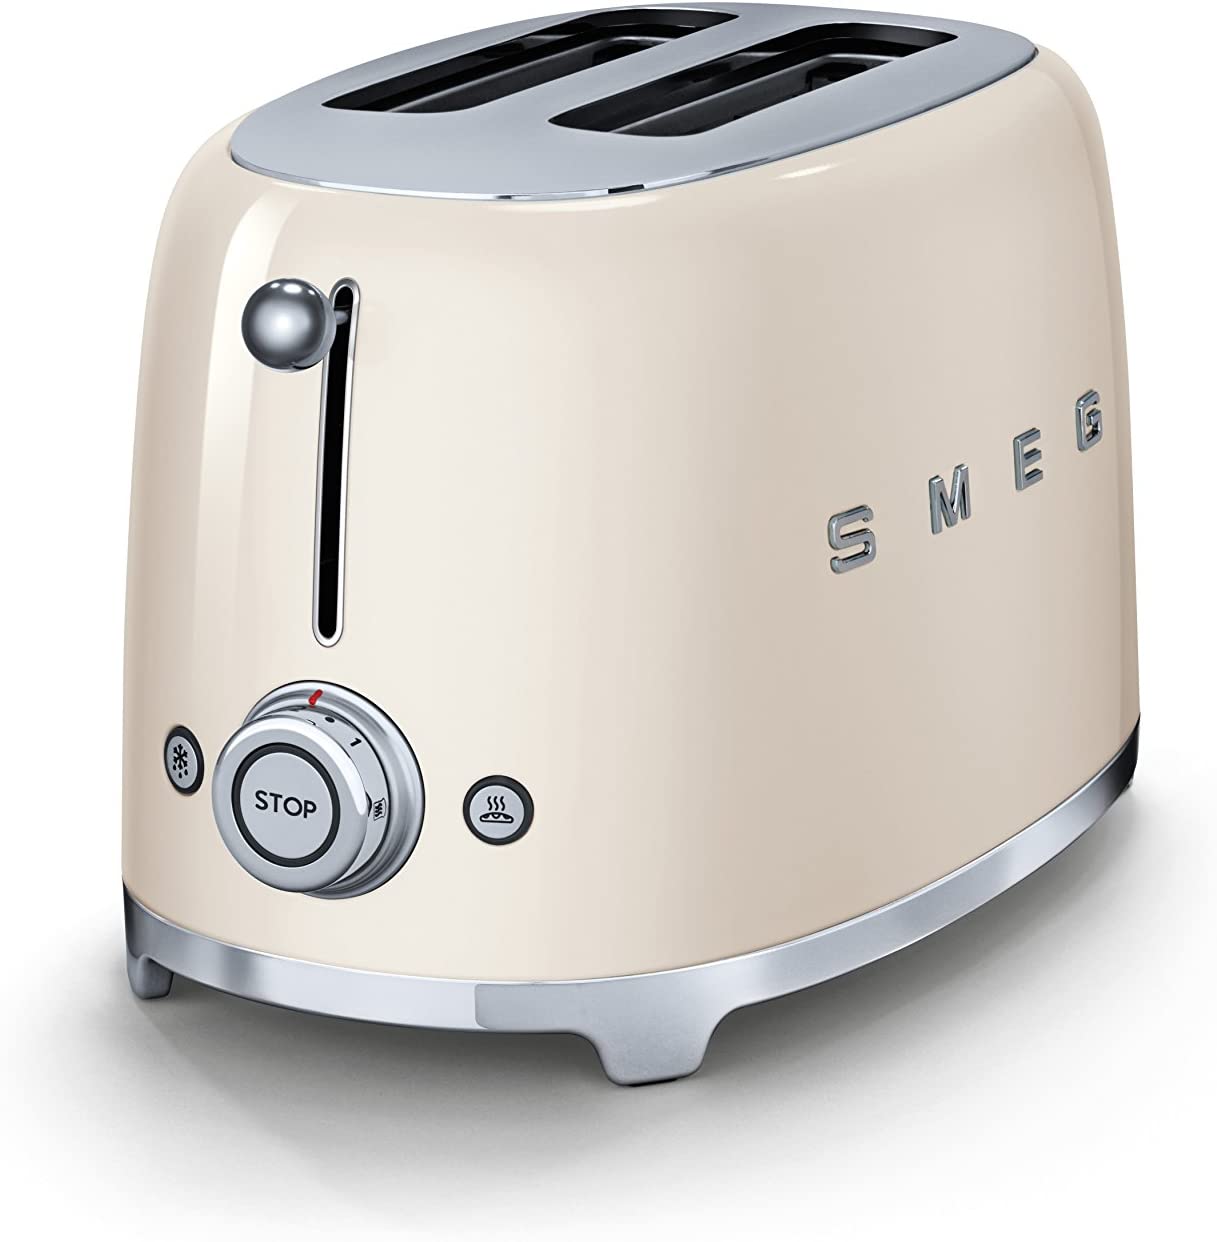 Smeg Toaster 50's Style